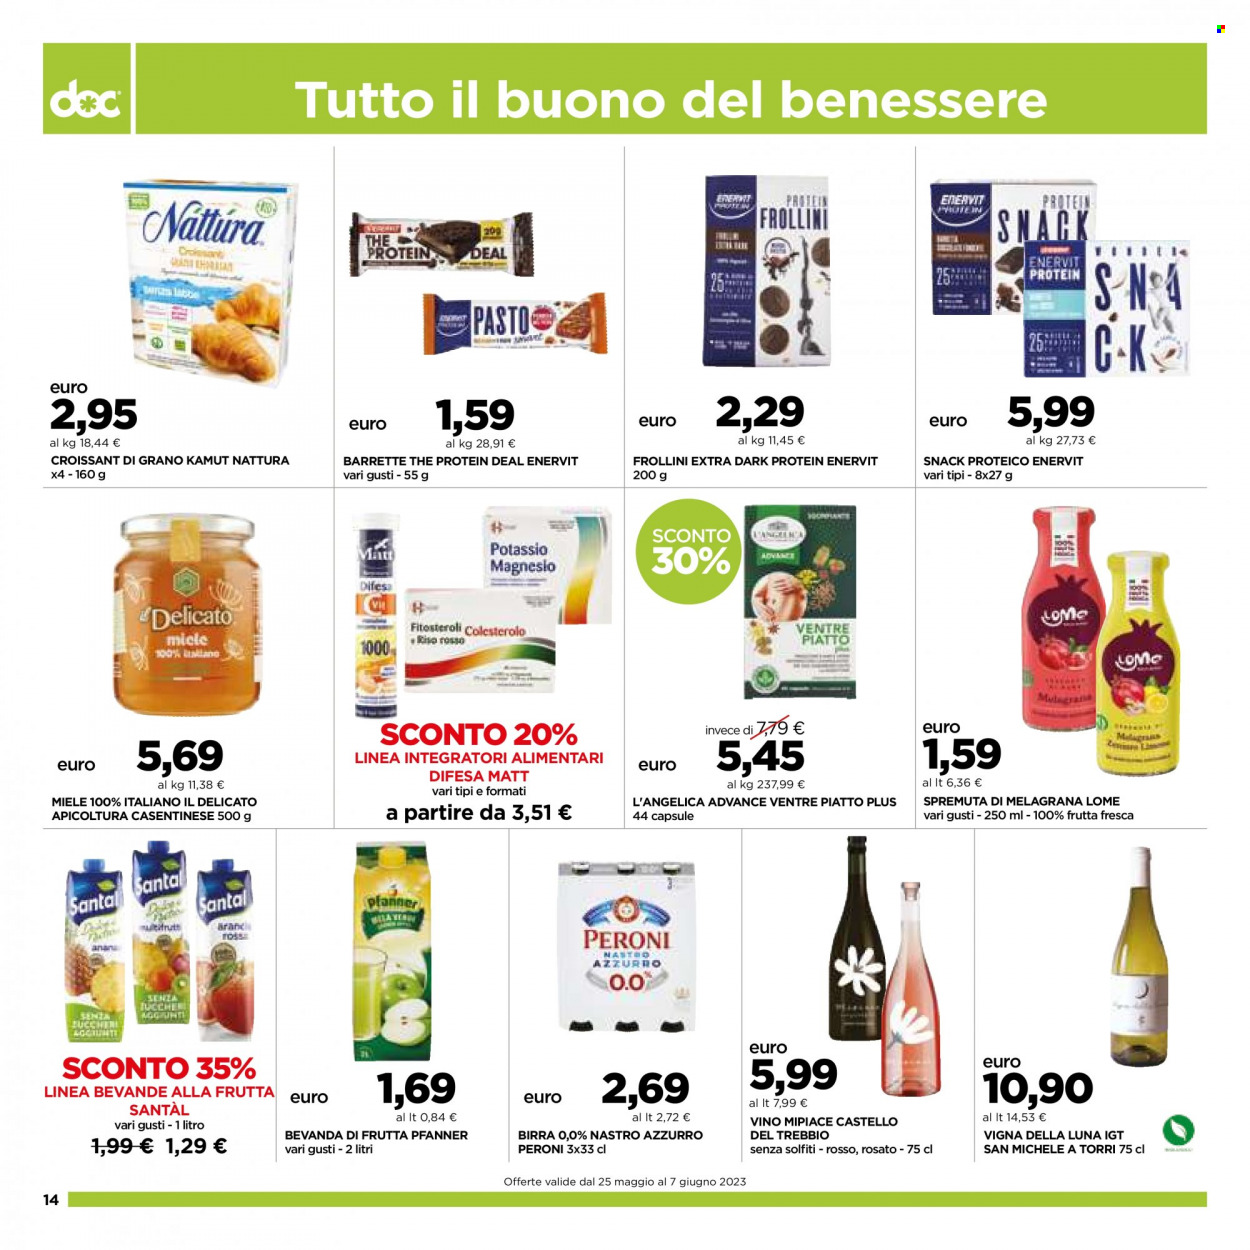 thumbnail - Volantino doc supermercati - 25/5/2023 - 7/6/2023 - Prodotti in offerta - Peroni, birra, Nastro Azzurro, croissant, melograno, frollini, barretta, miele, Pfanner, bevanda alla frutta, Santal, spremuta, vino. Pagina 14.